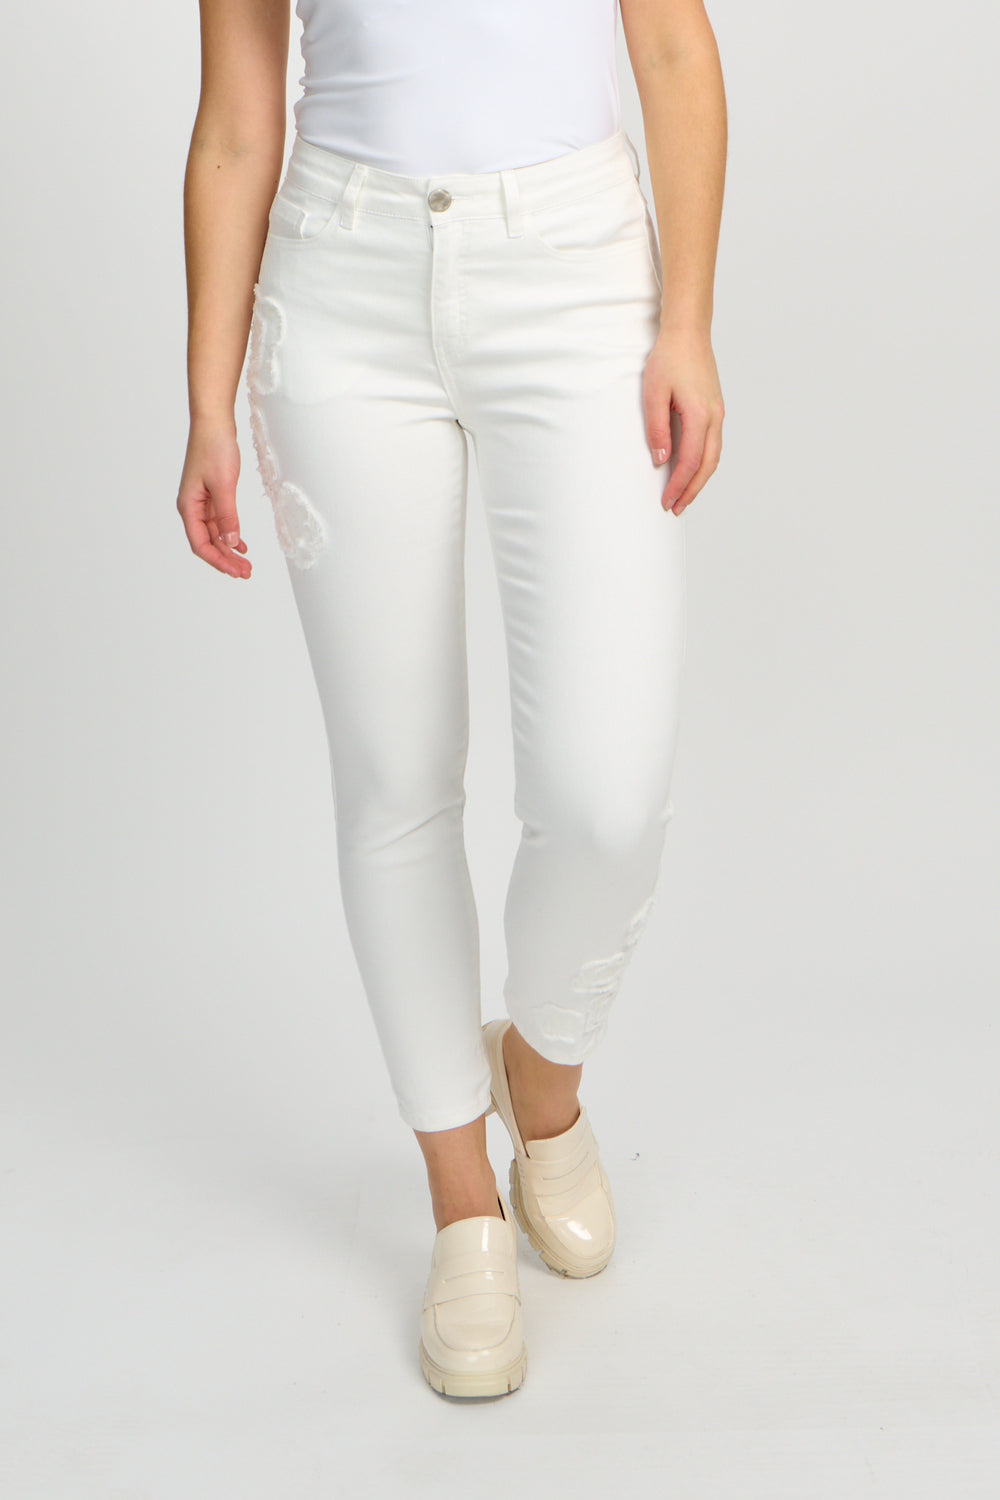 White Floral Pattern Jean